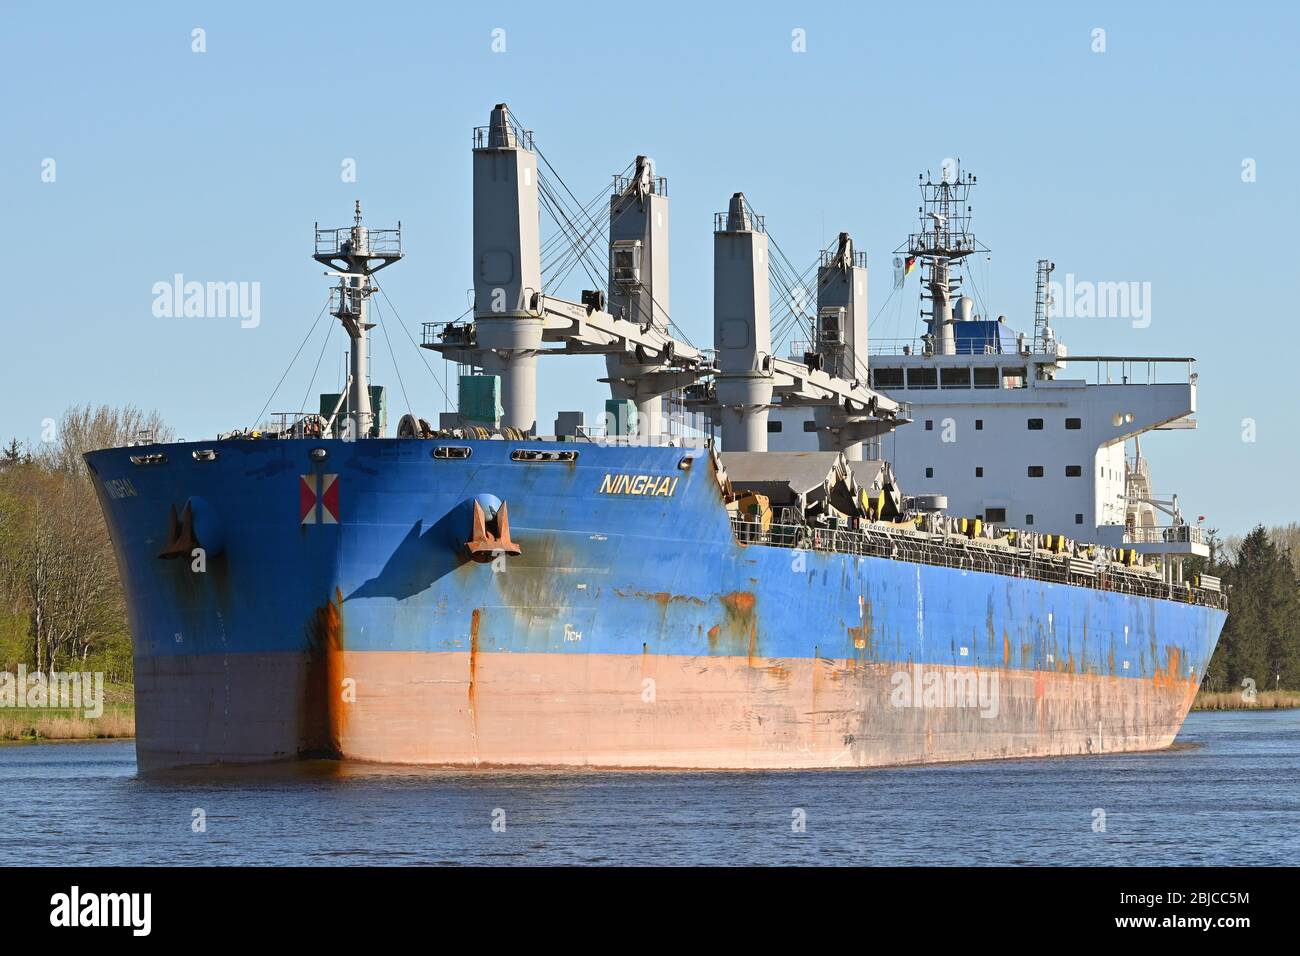 Bulk Carrier Ninghai passing the Kiel Canal bound for Oskarshamn in Sweden Stock Photo